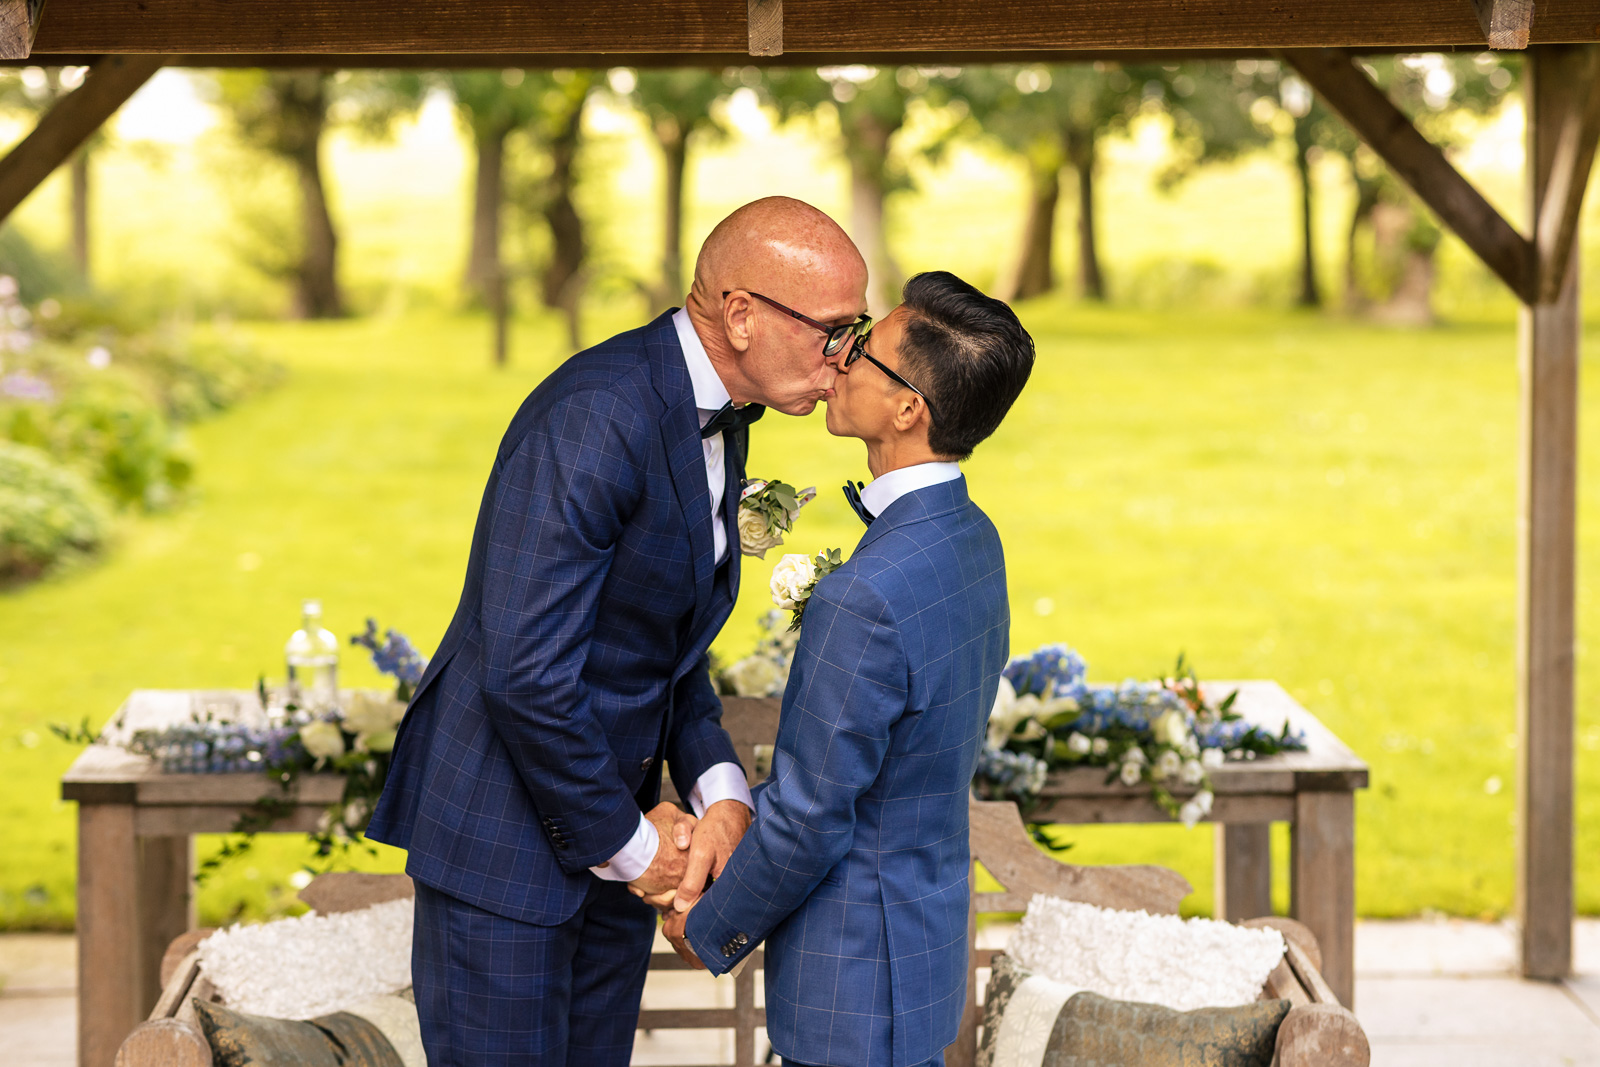 Trouwfotograaf Delft ceremonie first kiss Homo huwelijk 